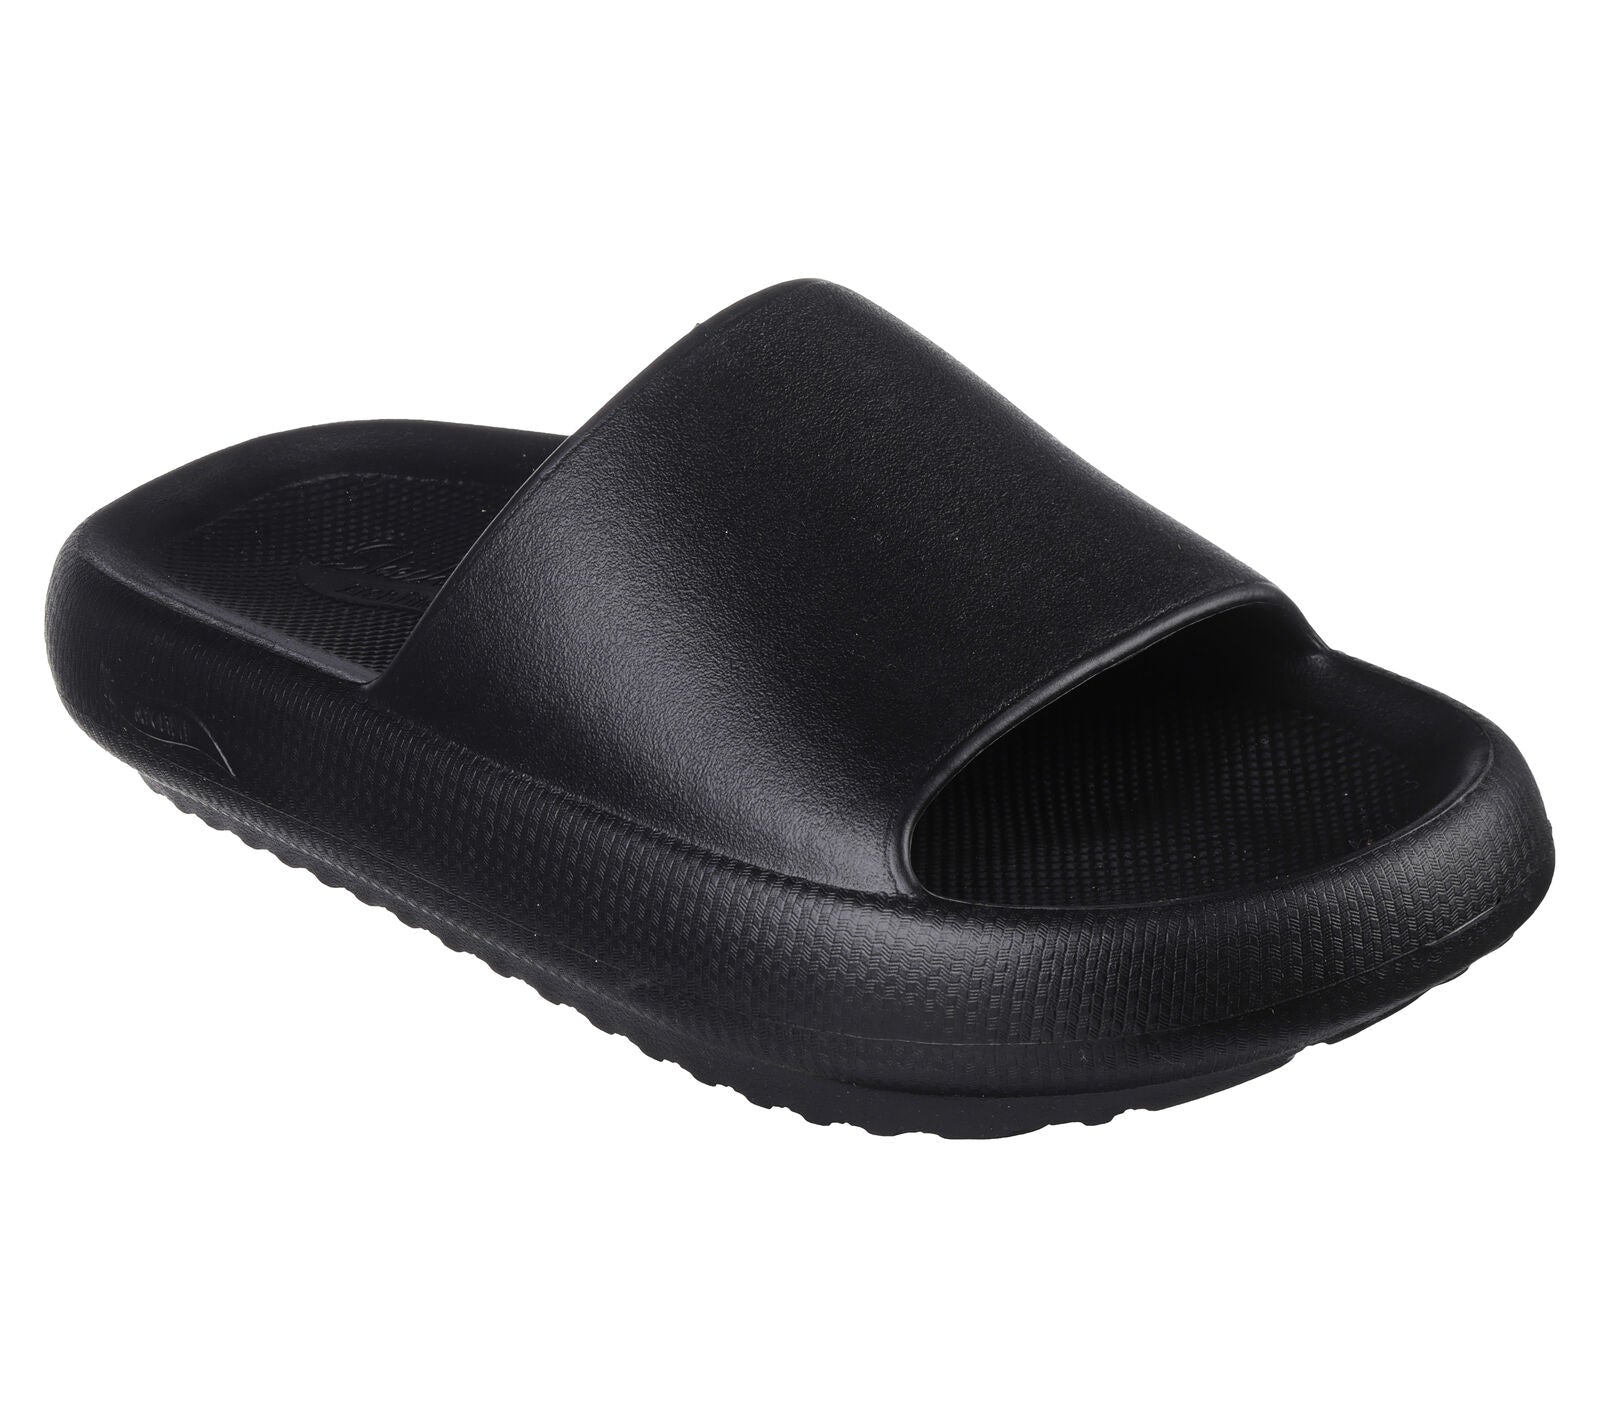 Skechers 111630 Arch Fit Horizon Ladies Black EVA Arch Support Slider Sandals